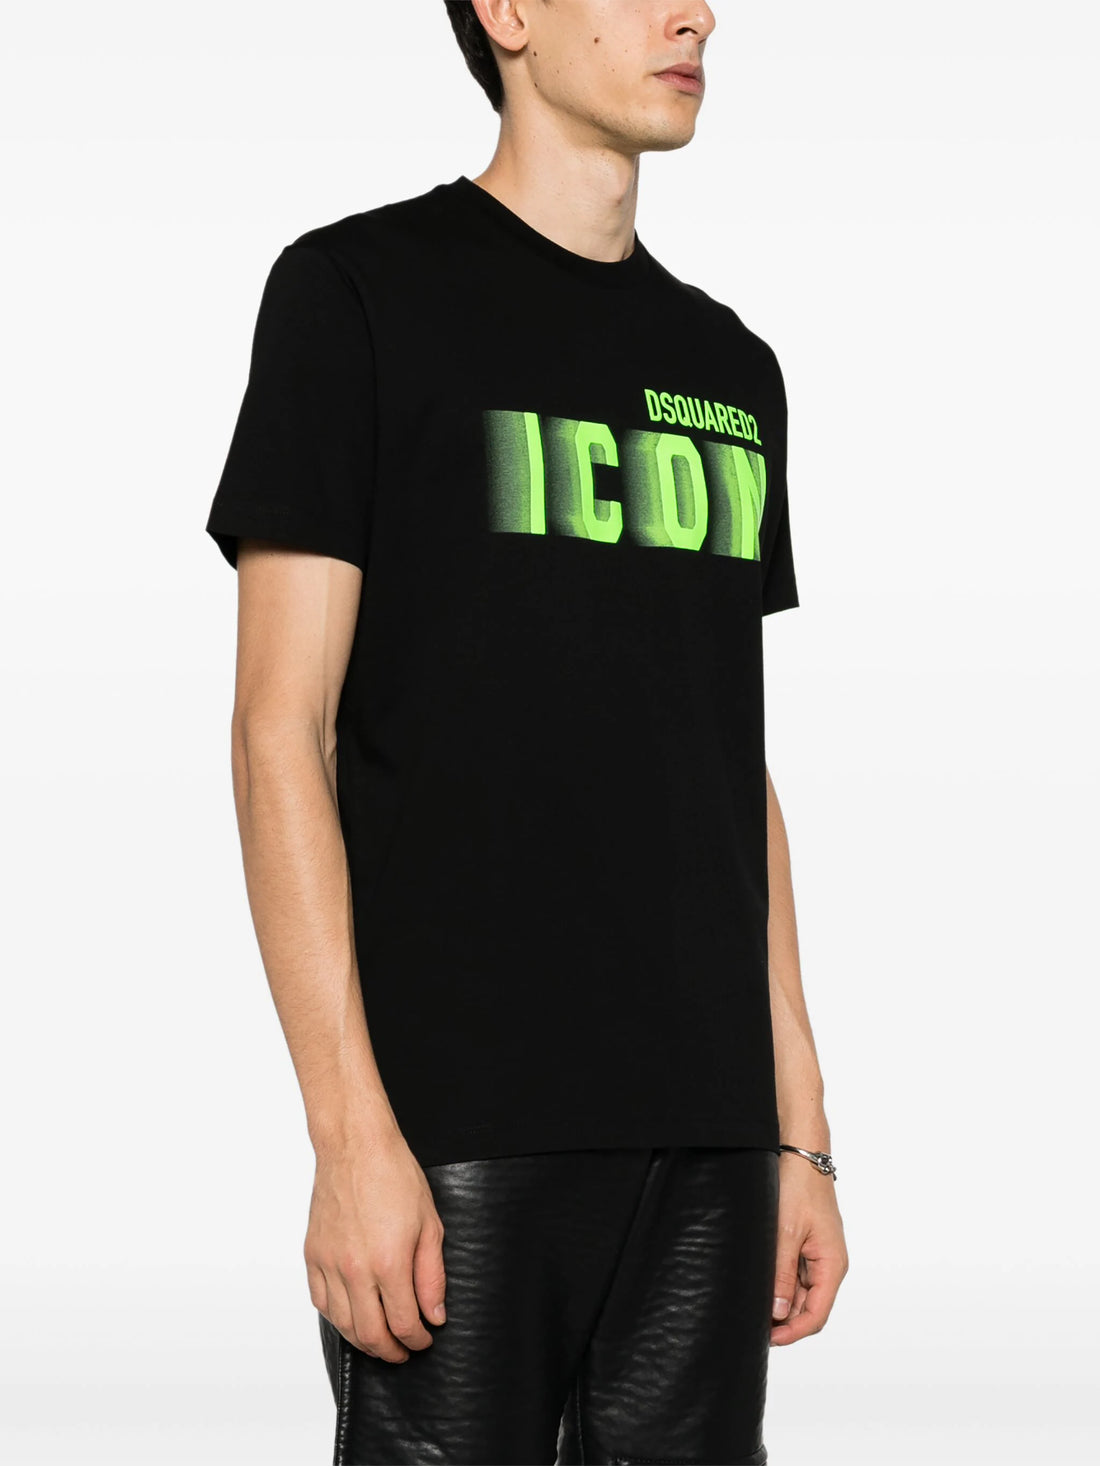 DSQUARED2 Icon Blur Cool Fit Cotton T-shirt Black/Fluo Green - MAISONDEFASHION.COM